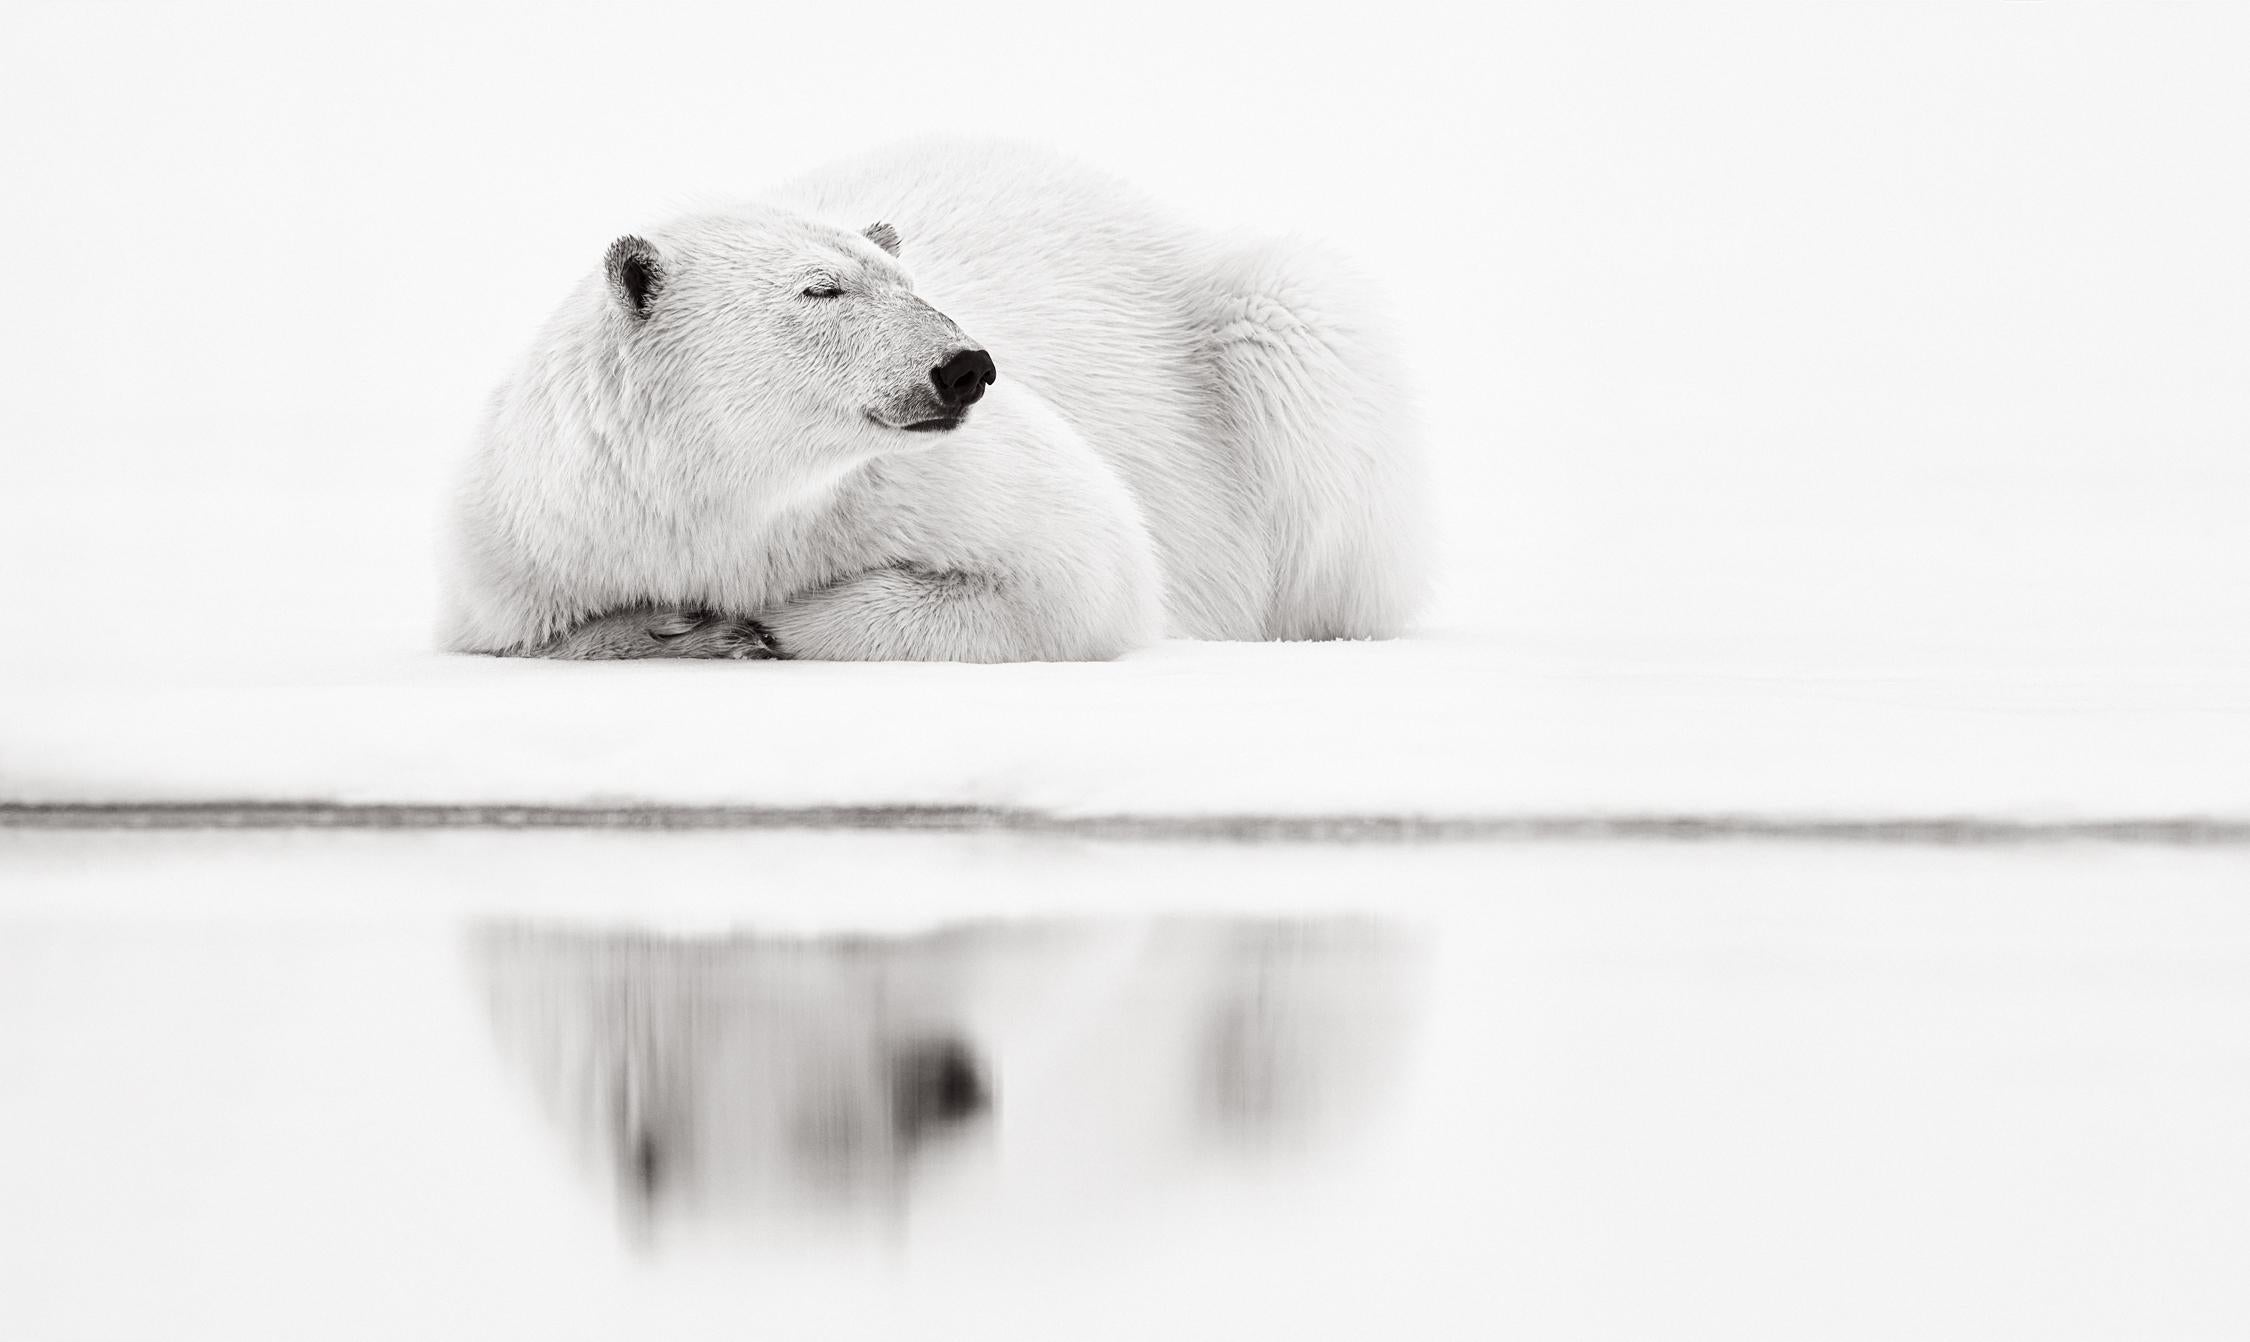 Black and White Photograph Drew Doggett - Ours polaire se reposant au bord de l'eau, photographie en noir et blanc